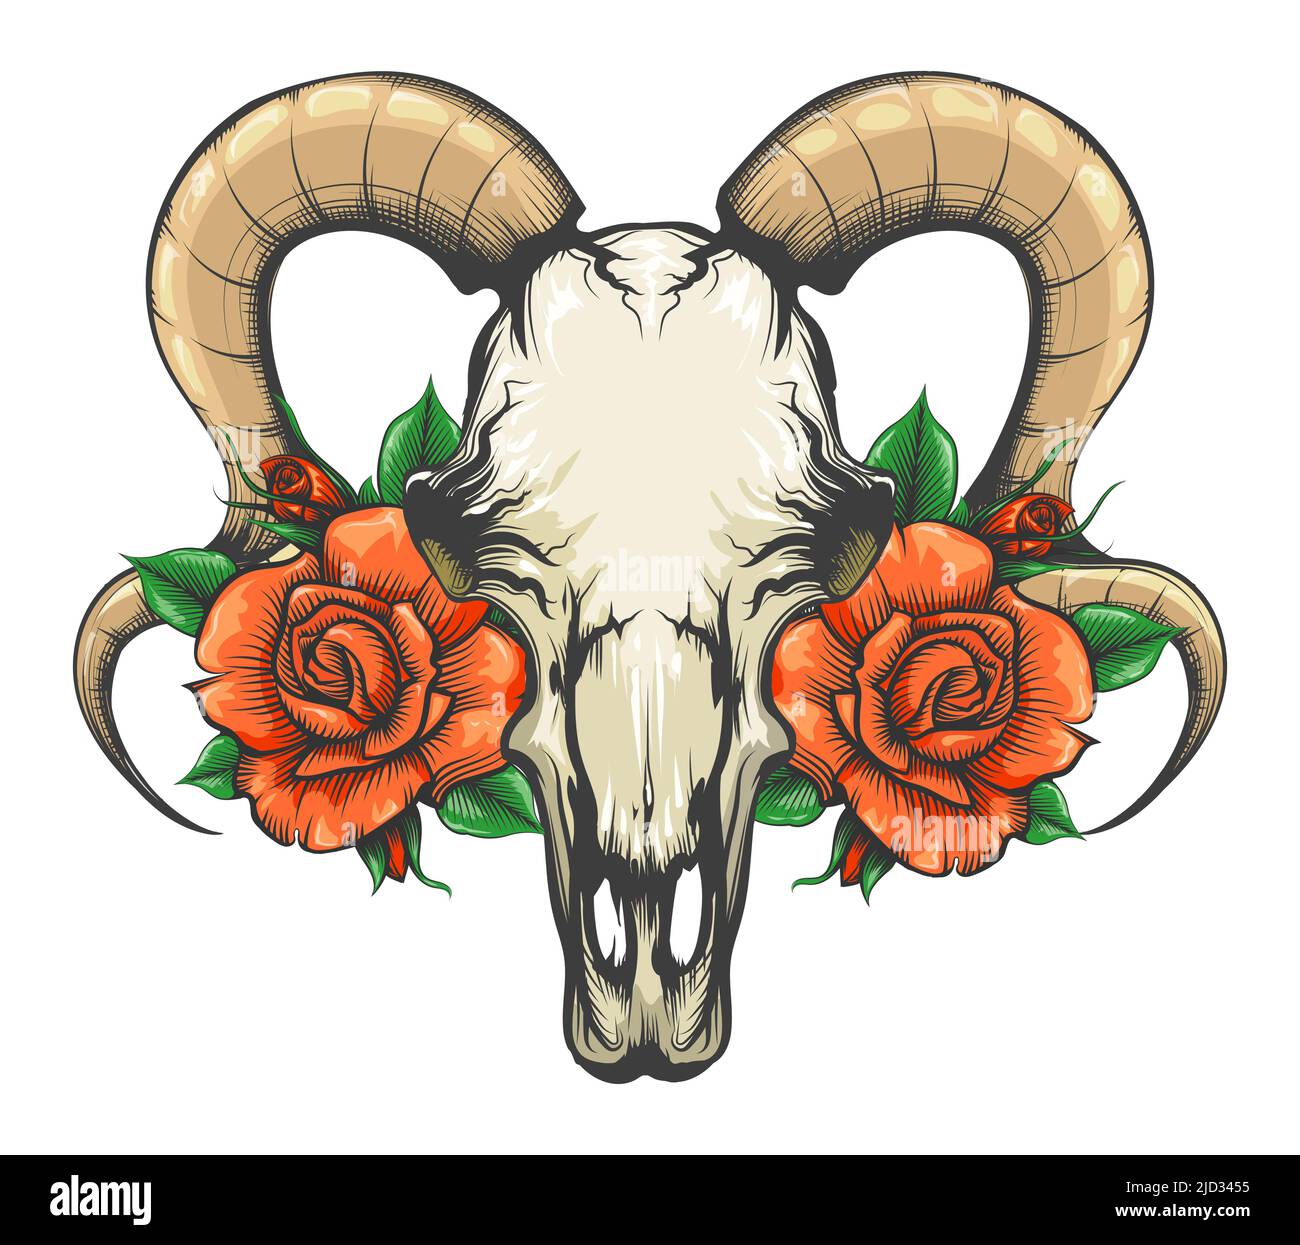 Tatouage de crâne de chèvre avec fleurs de rose tatouage dessiné en style gravure isolé sur blanc. Illustration vectorielle. Illustration de Vecteur